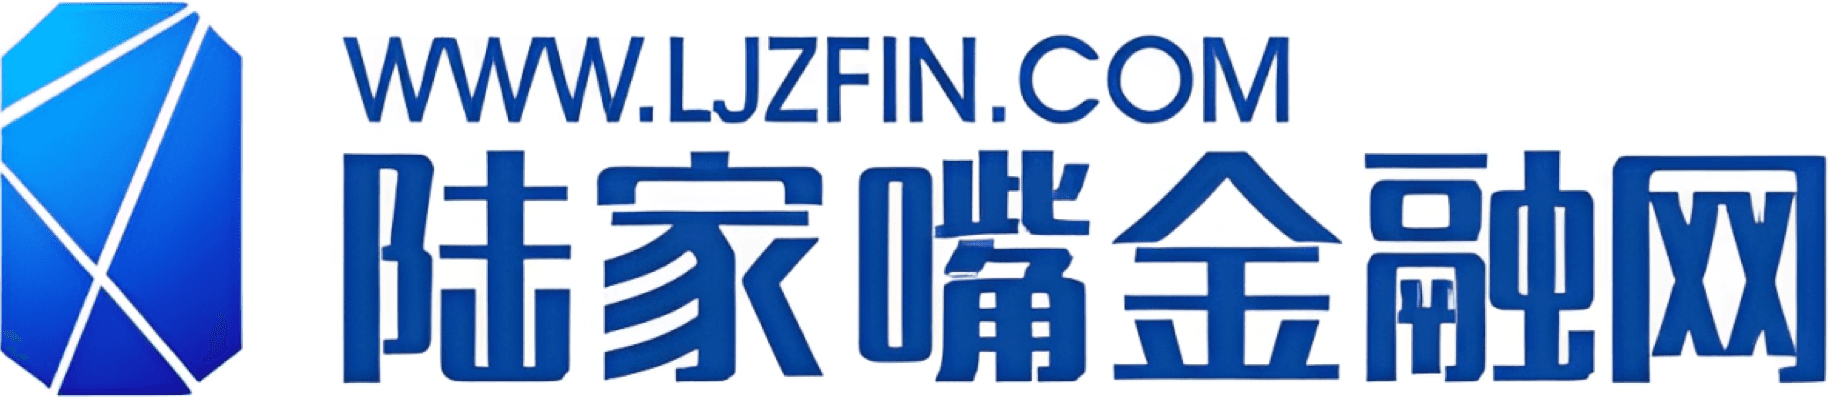 Ljzfin.com